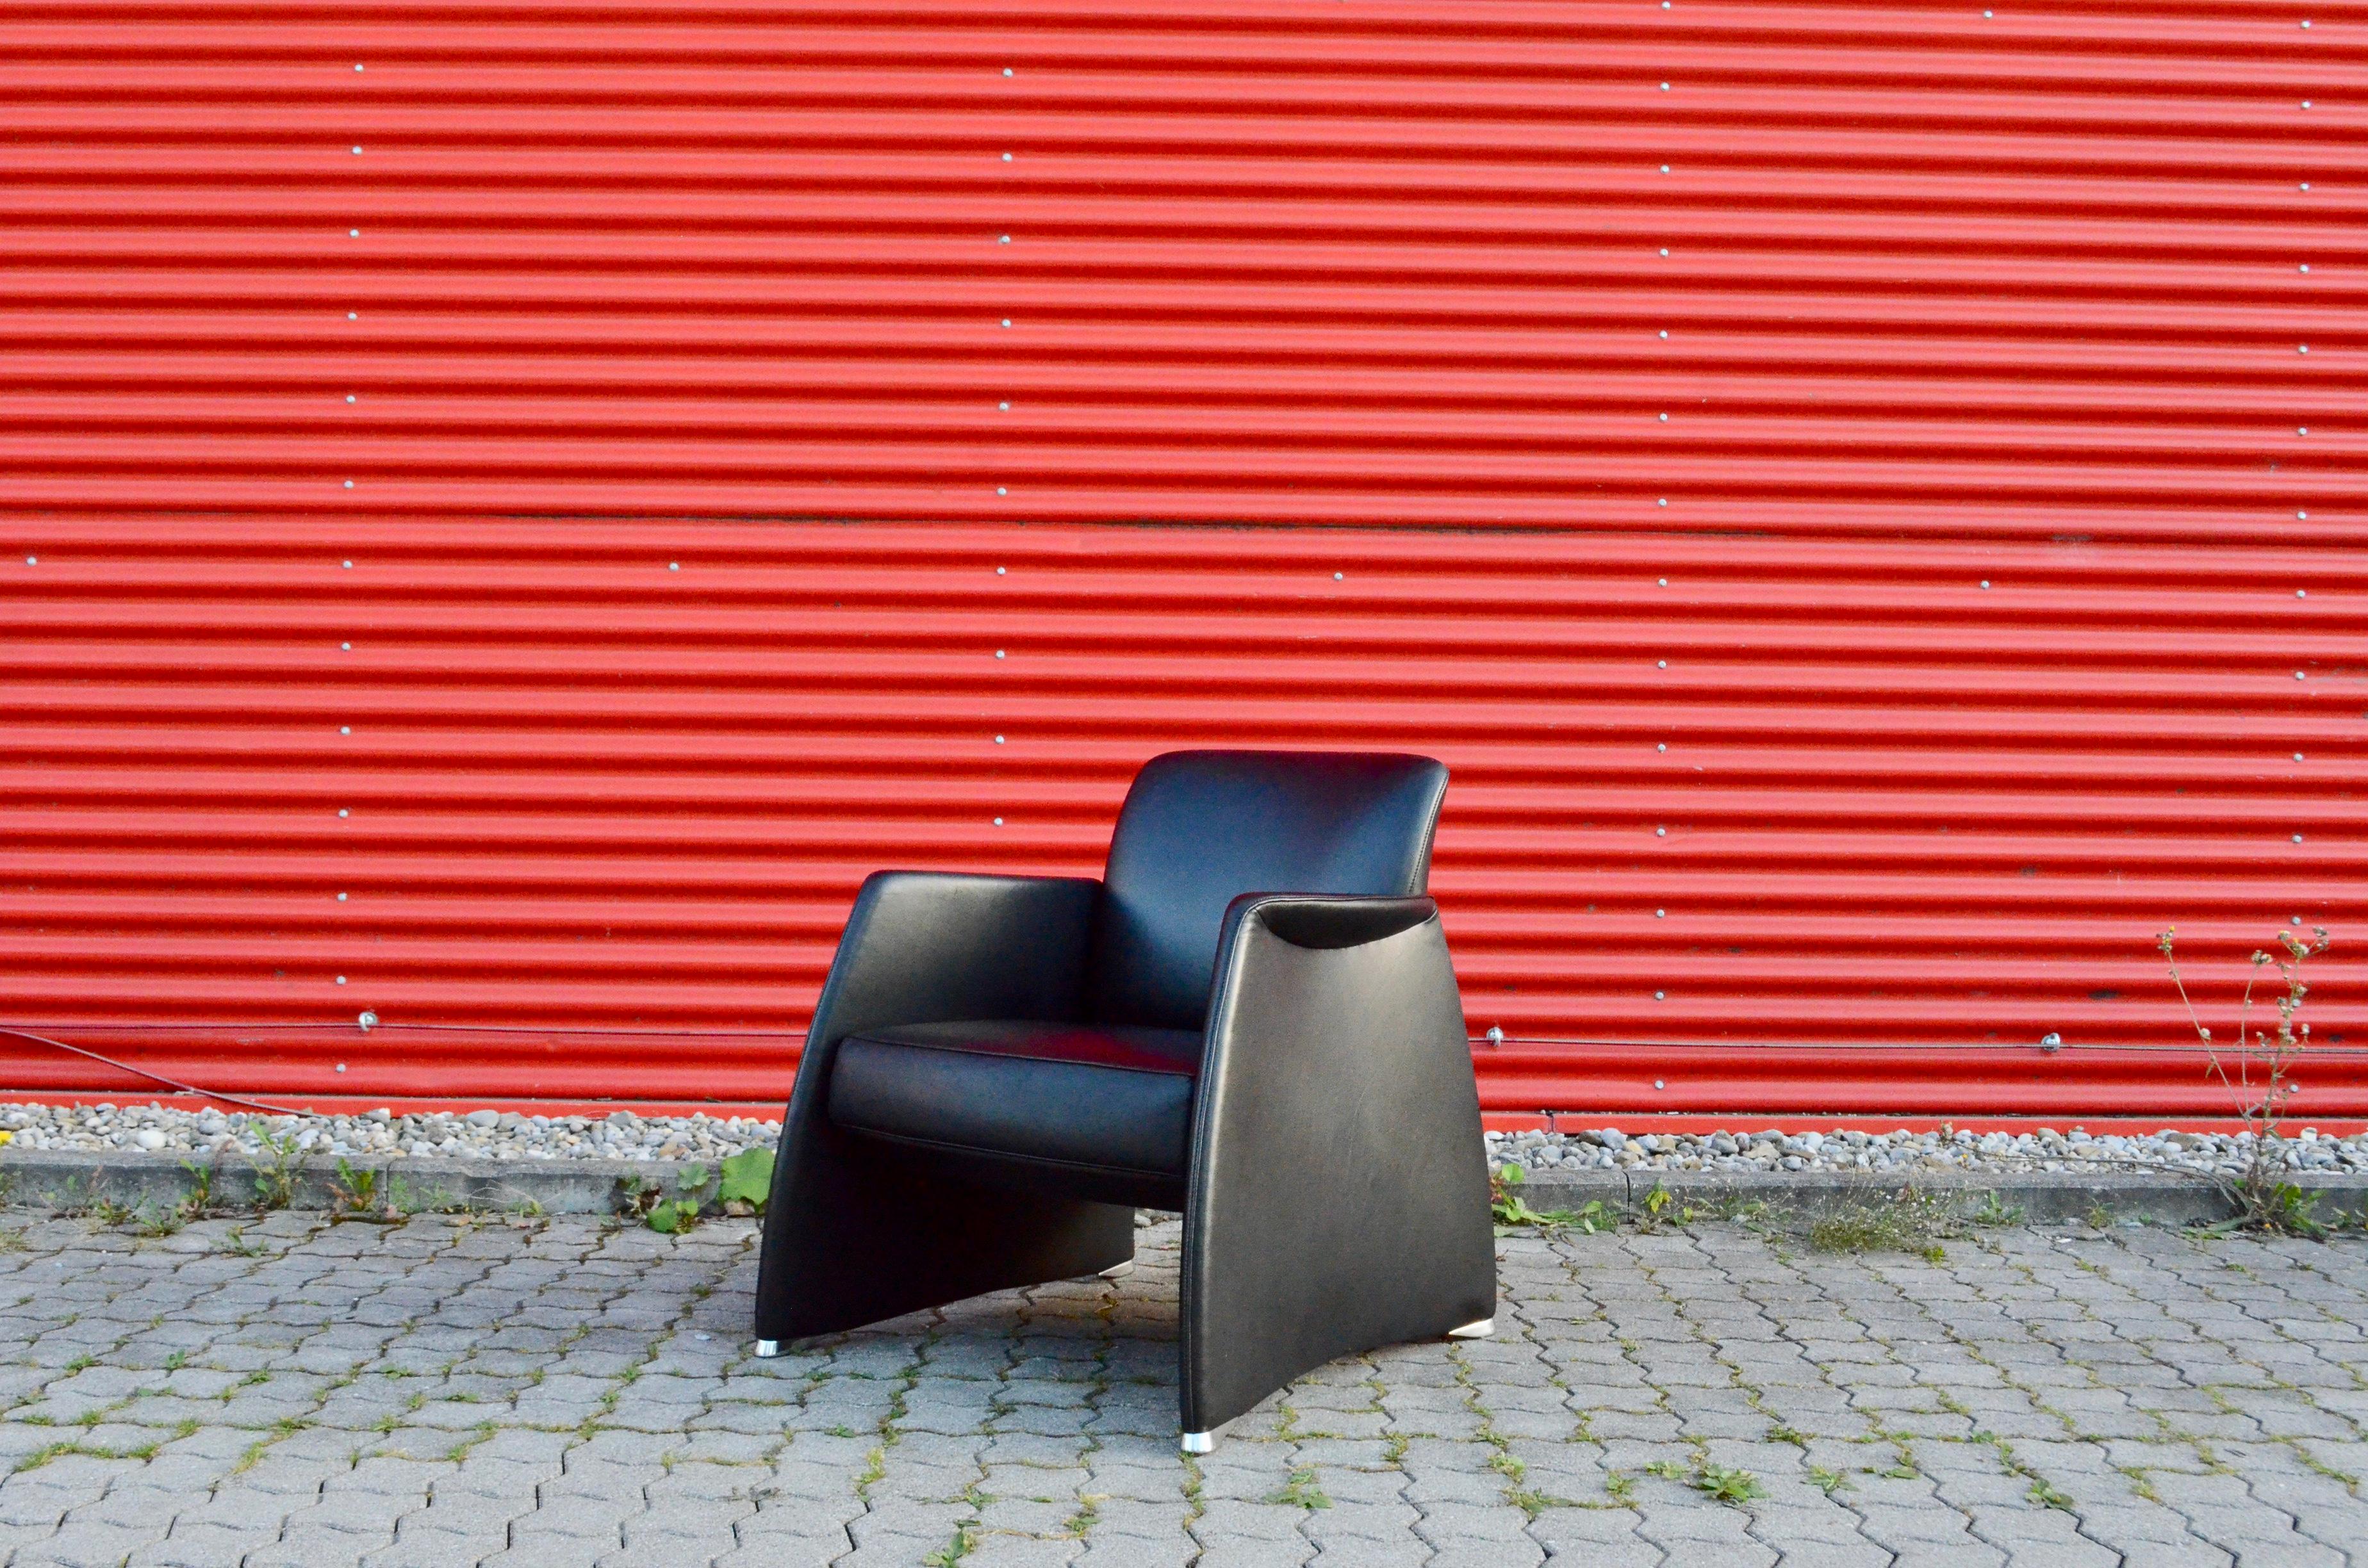 Ce fauteuil élégant a été fabriqué par la société suisse De Sede.
Cuir sélectionné noir et forme sculpturale.
Pieds en aluminium poli
Nous avons 2 chaises en stock.